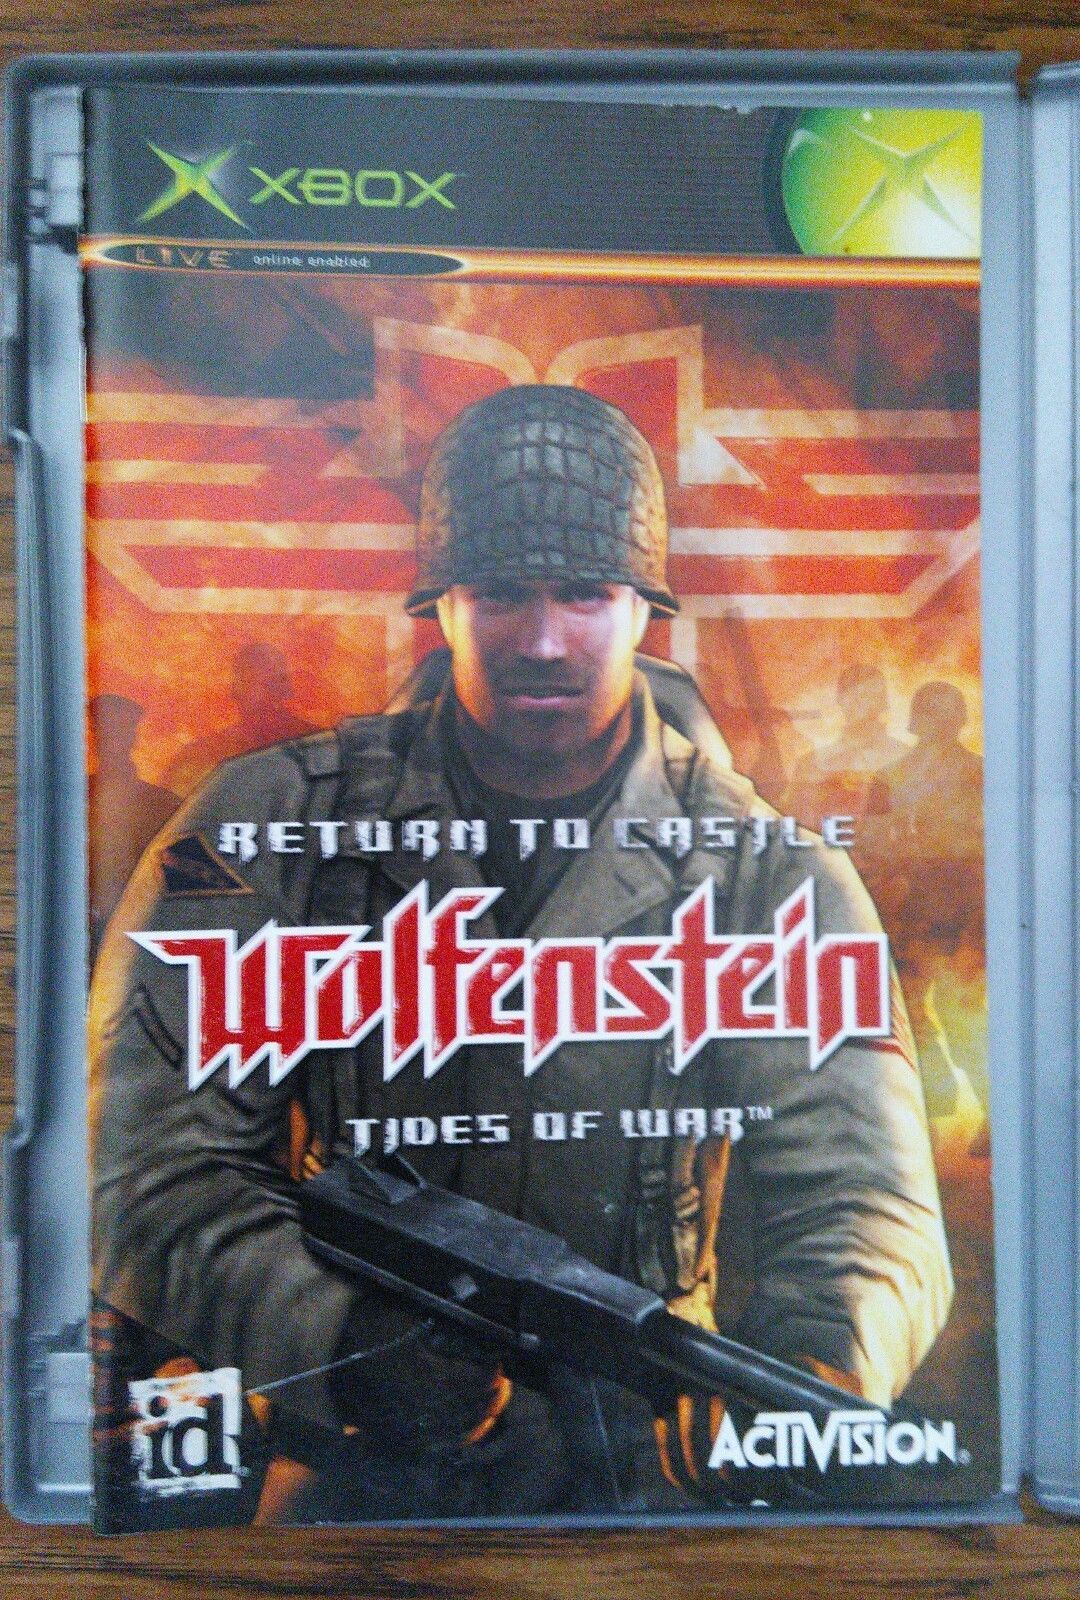 wolfenstein 2009 patch 1.2 no cd